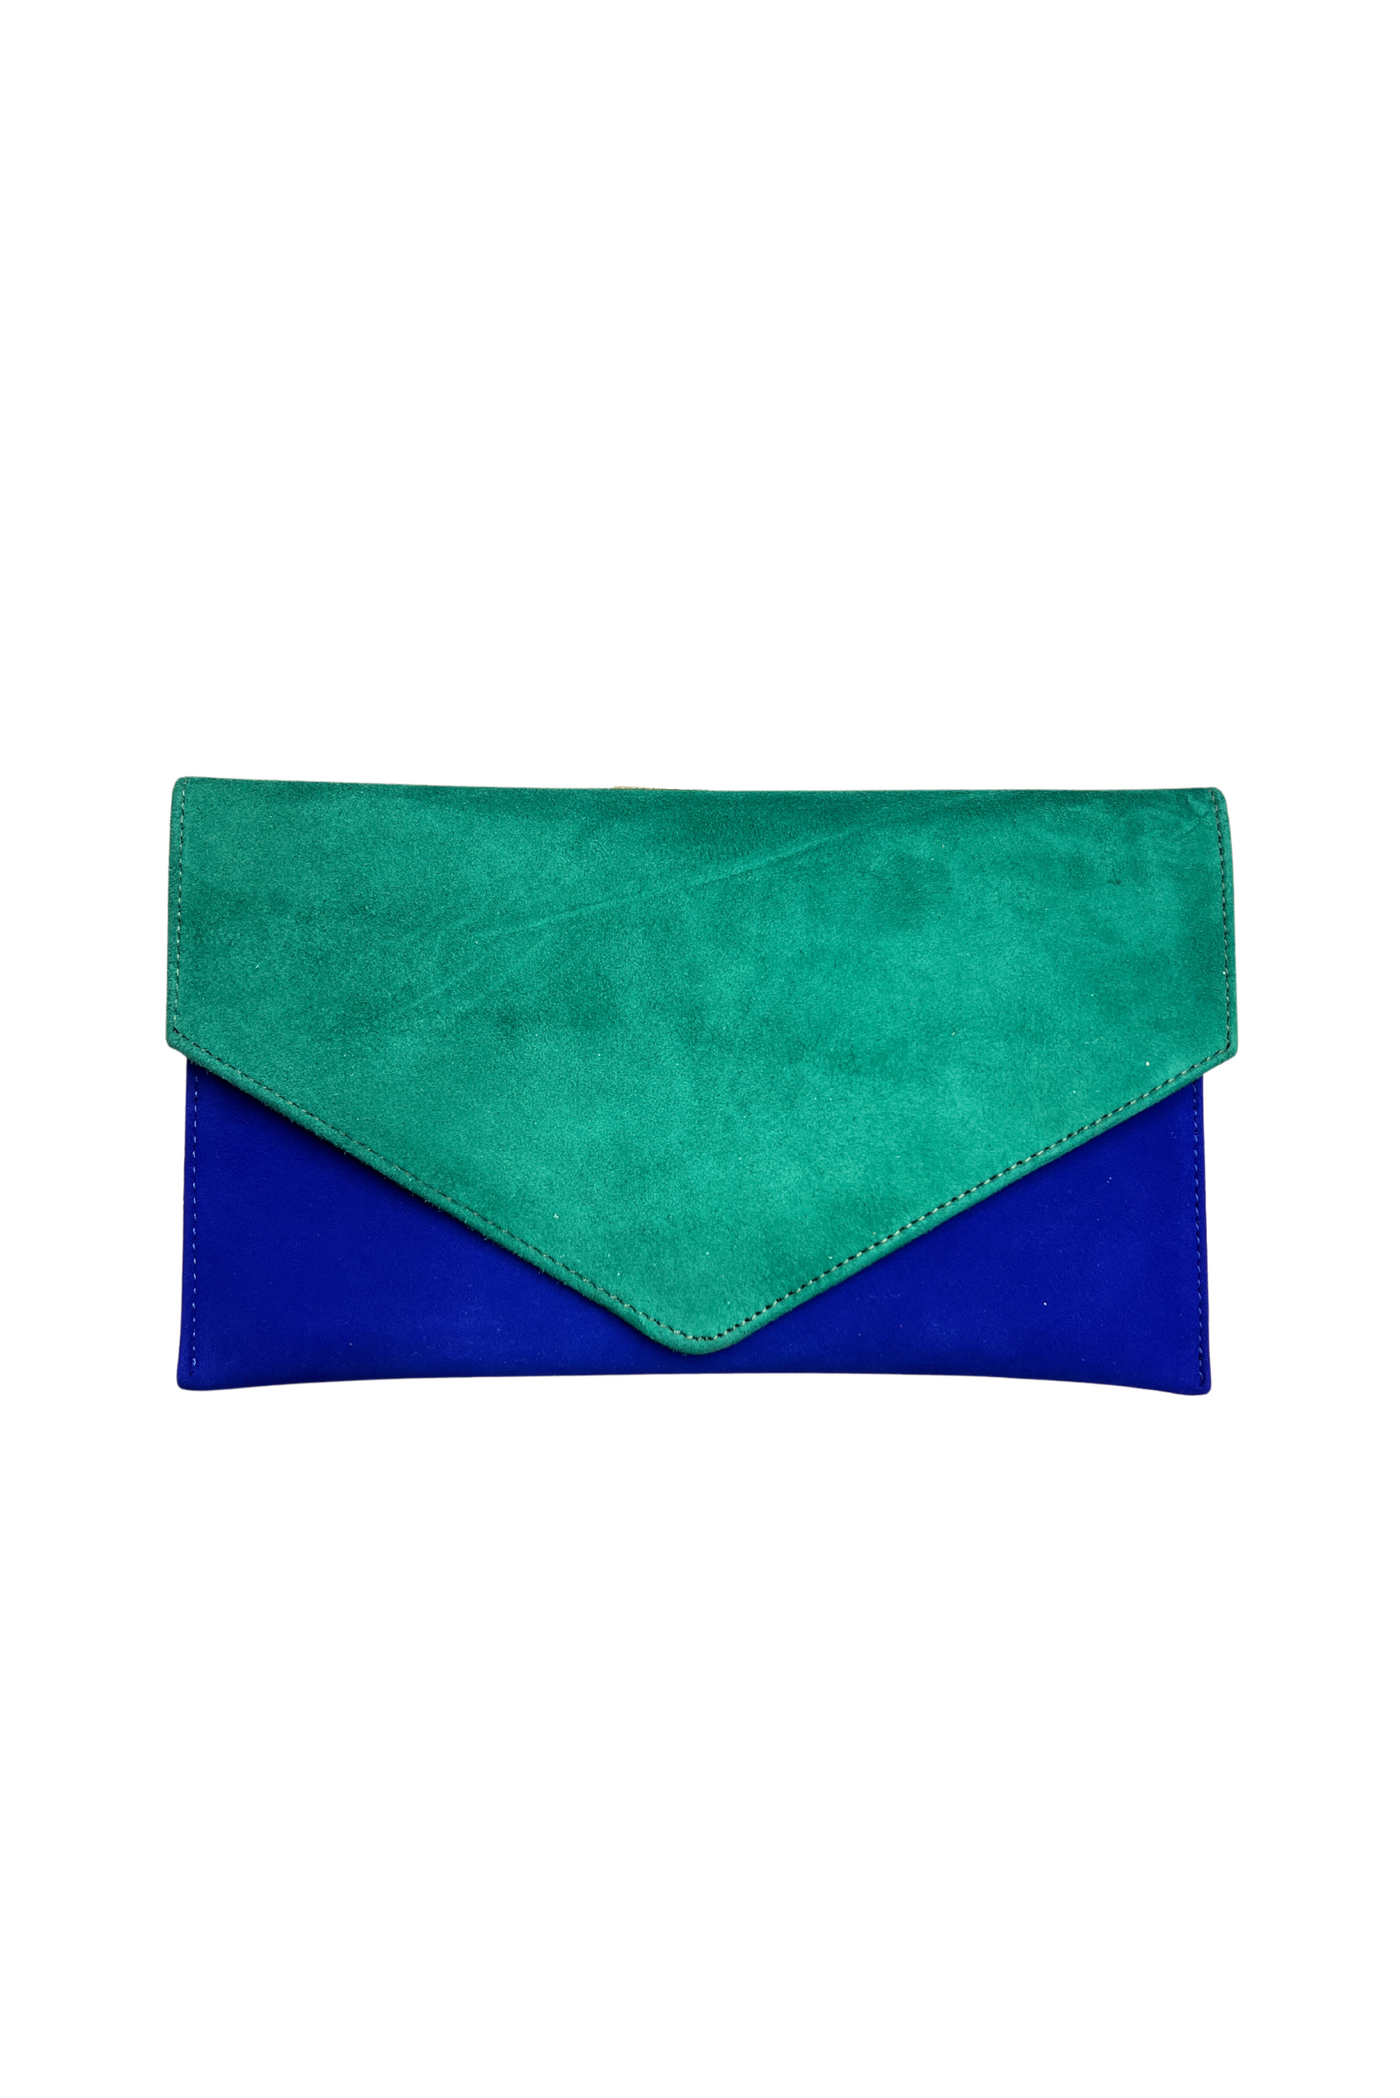 Green & Cobalt Blue Clutch Bag